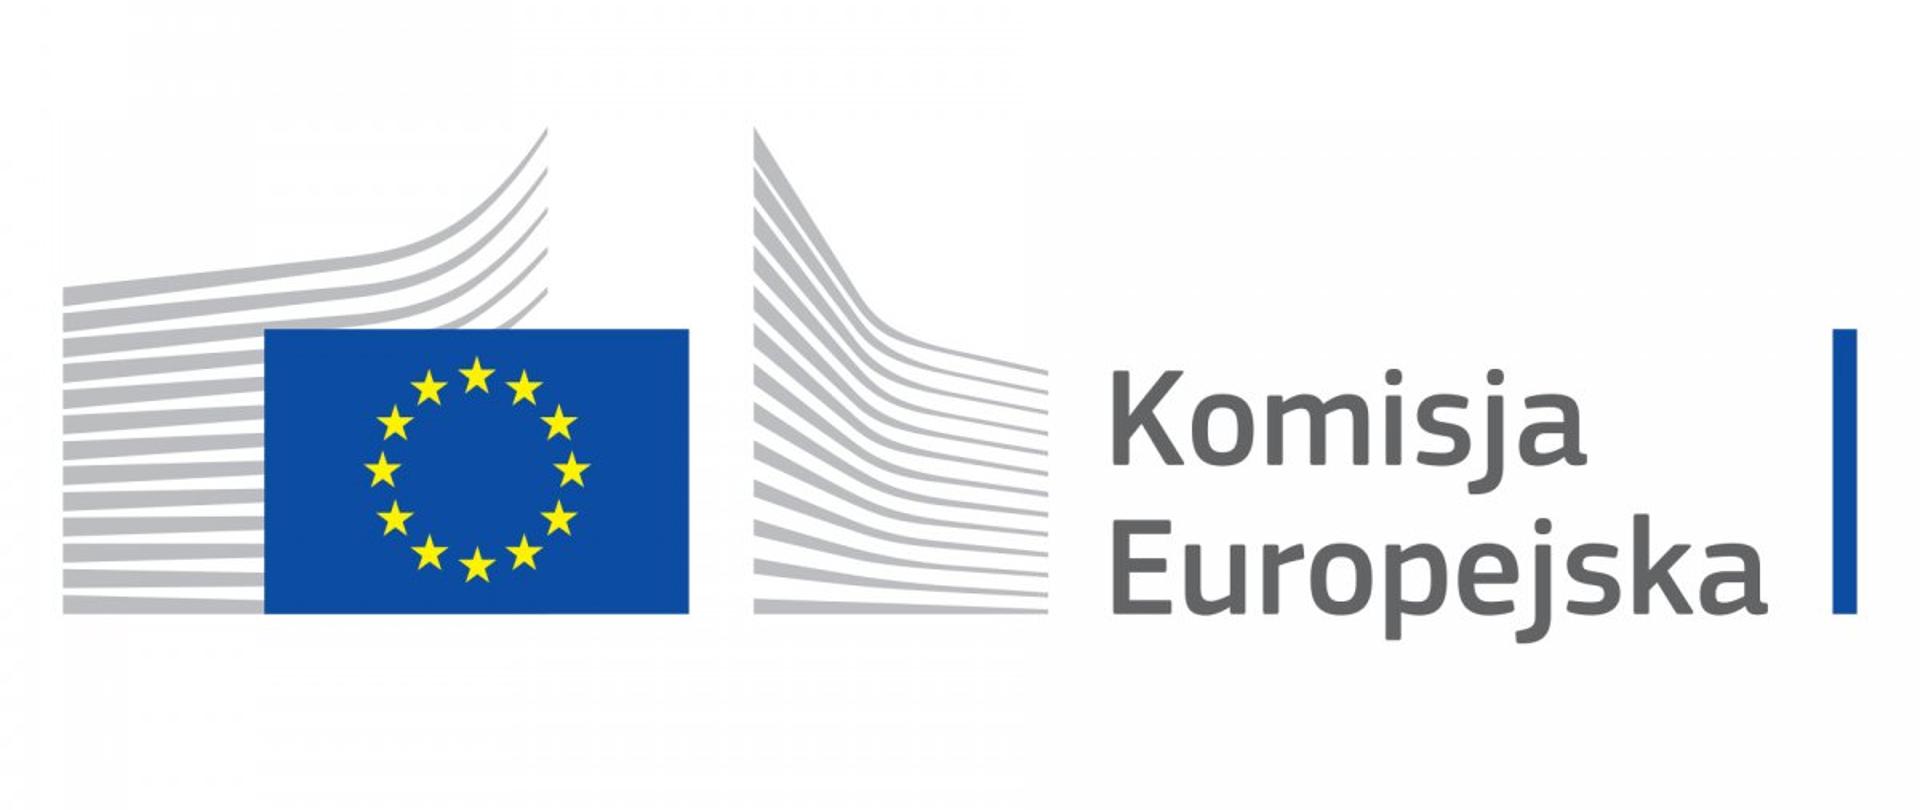 Wsparcie dla Małych i Średnich Przedsiębiorstw turystycznych w ramach inicjatywy Komisji Europejskiej